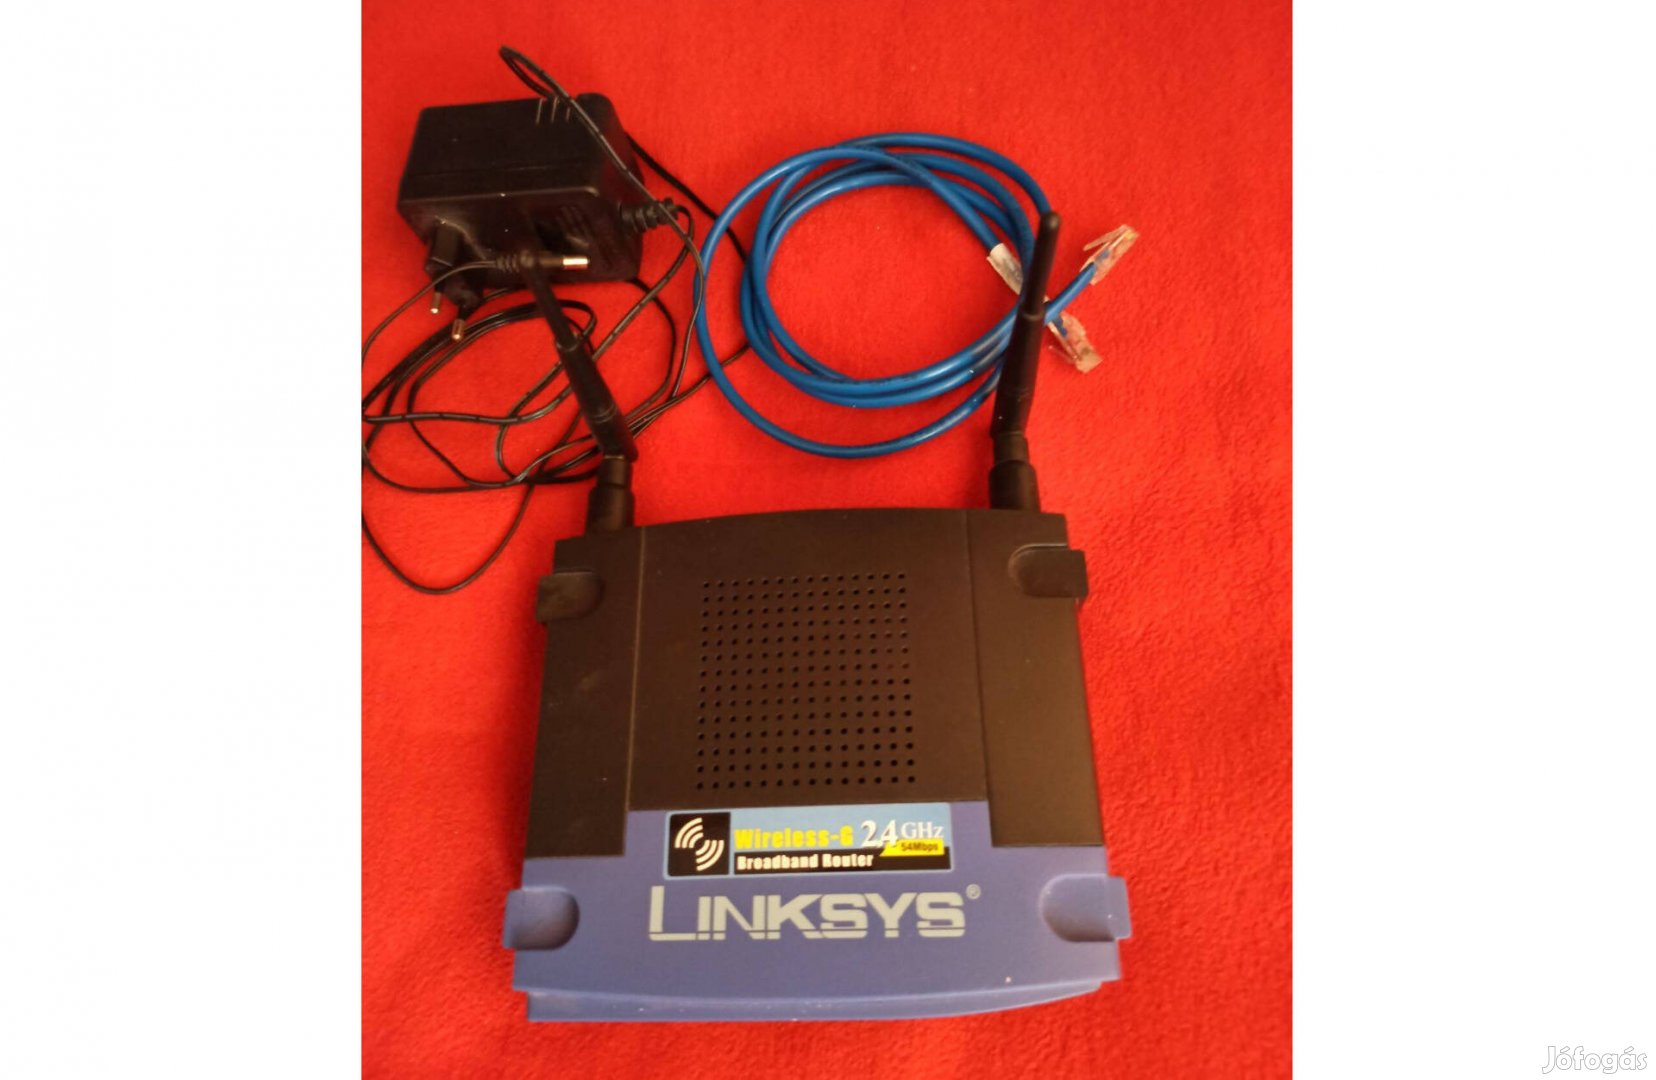 Linksys vezeték nélküli router 2,4 GHz 54 Mbps